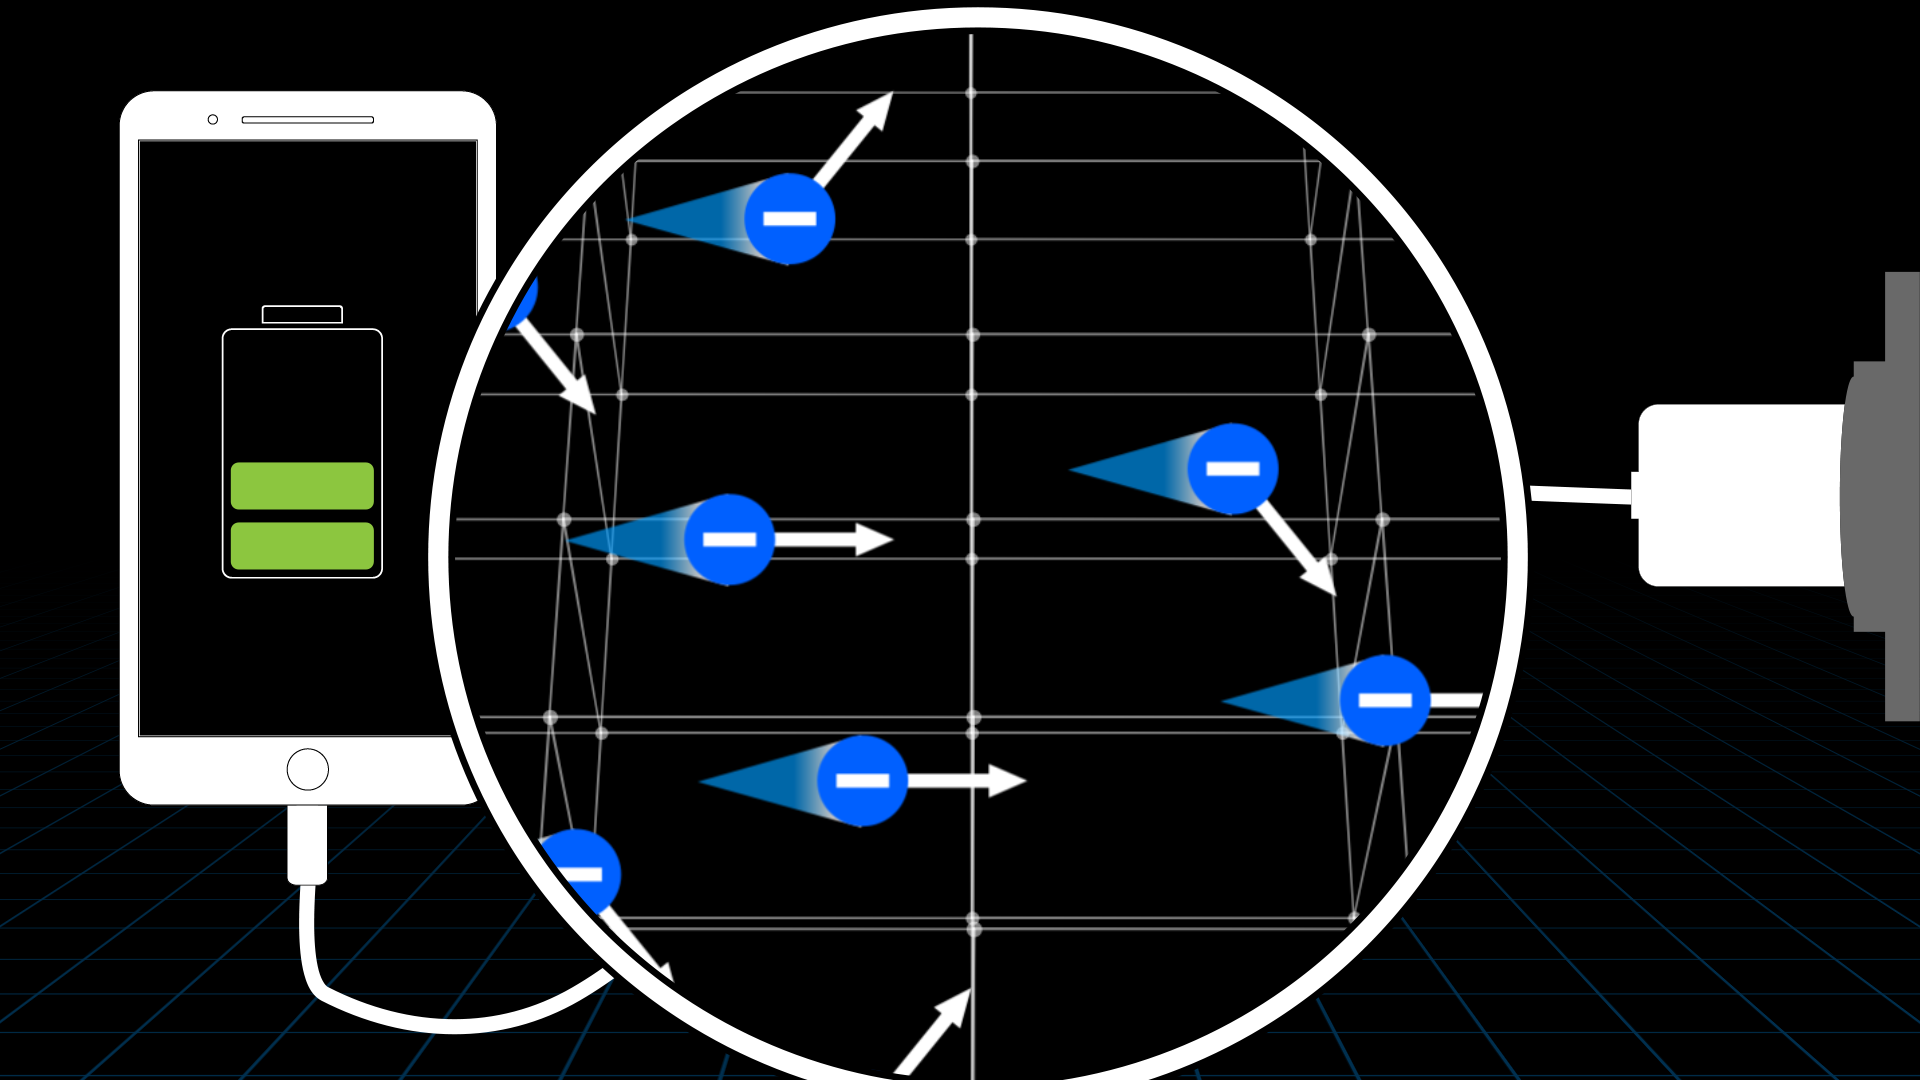 Rys. 3. Rysunek poglądowy przedstawia graficzną ilustrację treści. Podczas ładowania telefonu elektrony, oprócz wykonywania ruchu termicznego, powoli przesuwają się w kablu, w jedną stronę.